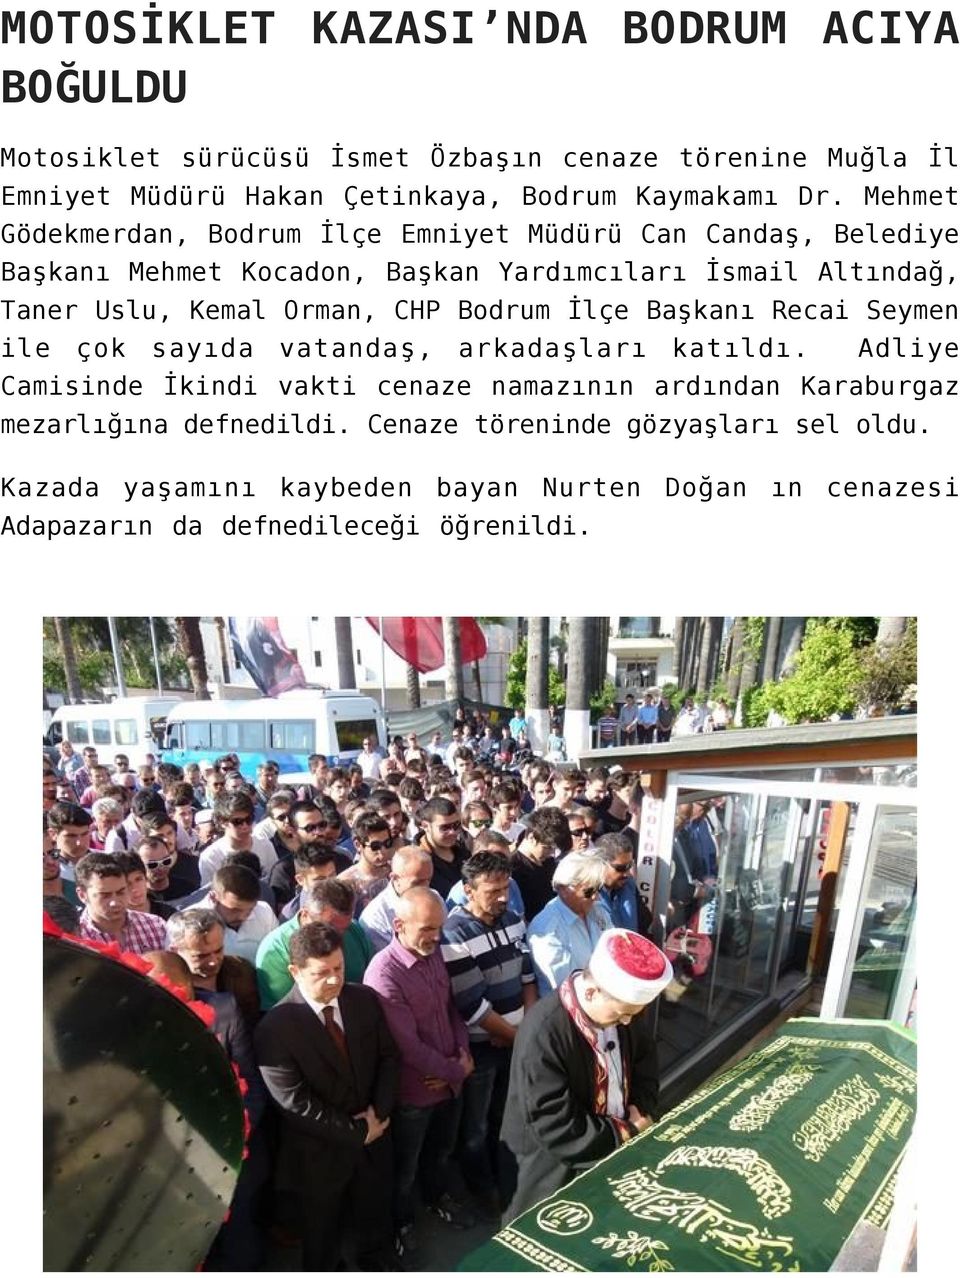 CHP Bodrum İlçe Başkanı Recai Seymen ile çok sayıda vatandaş, arkadaşları katıldı.